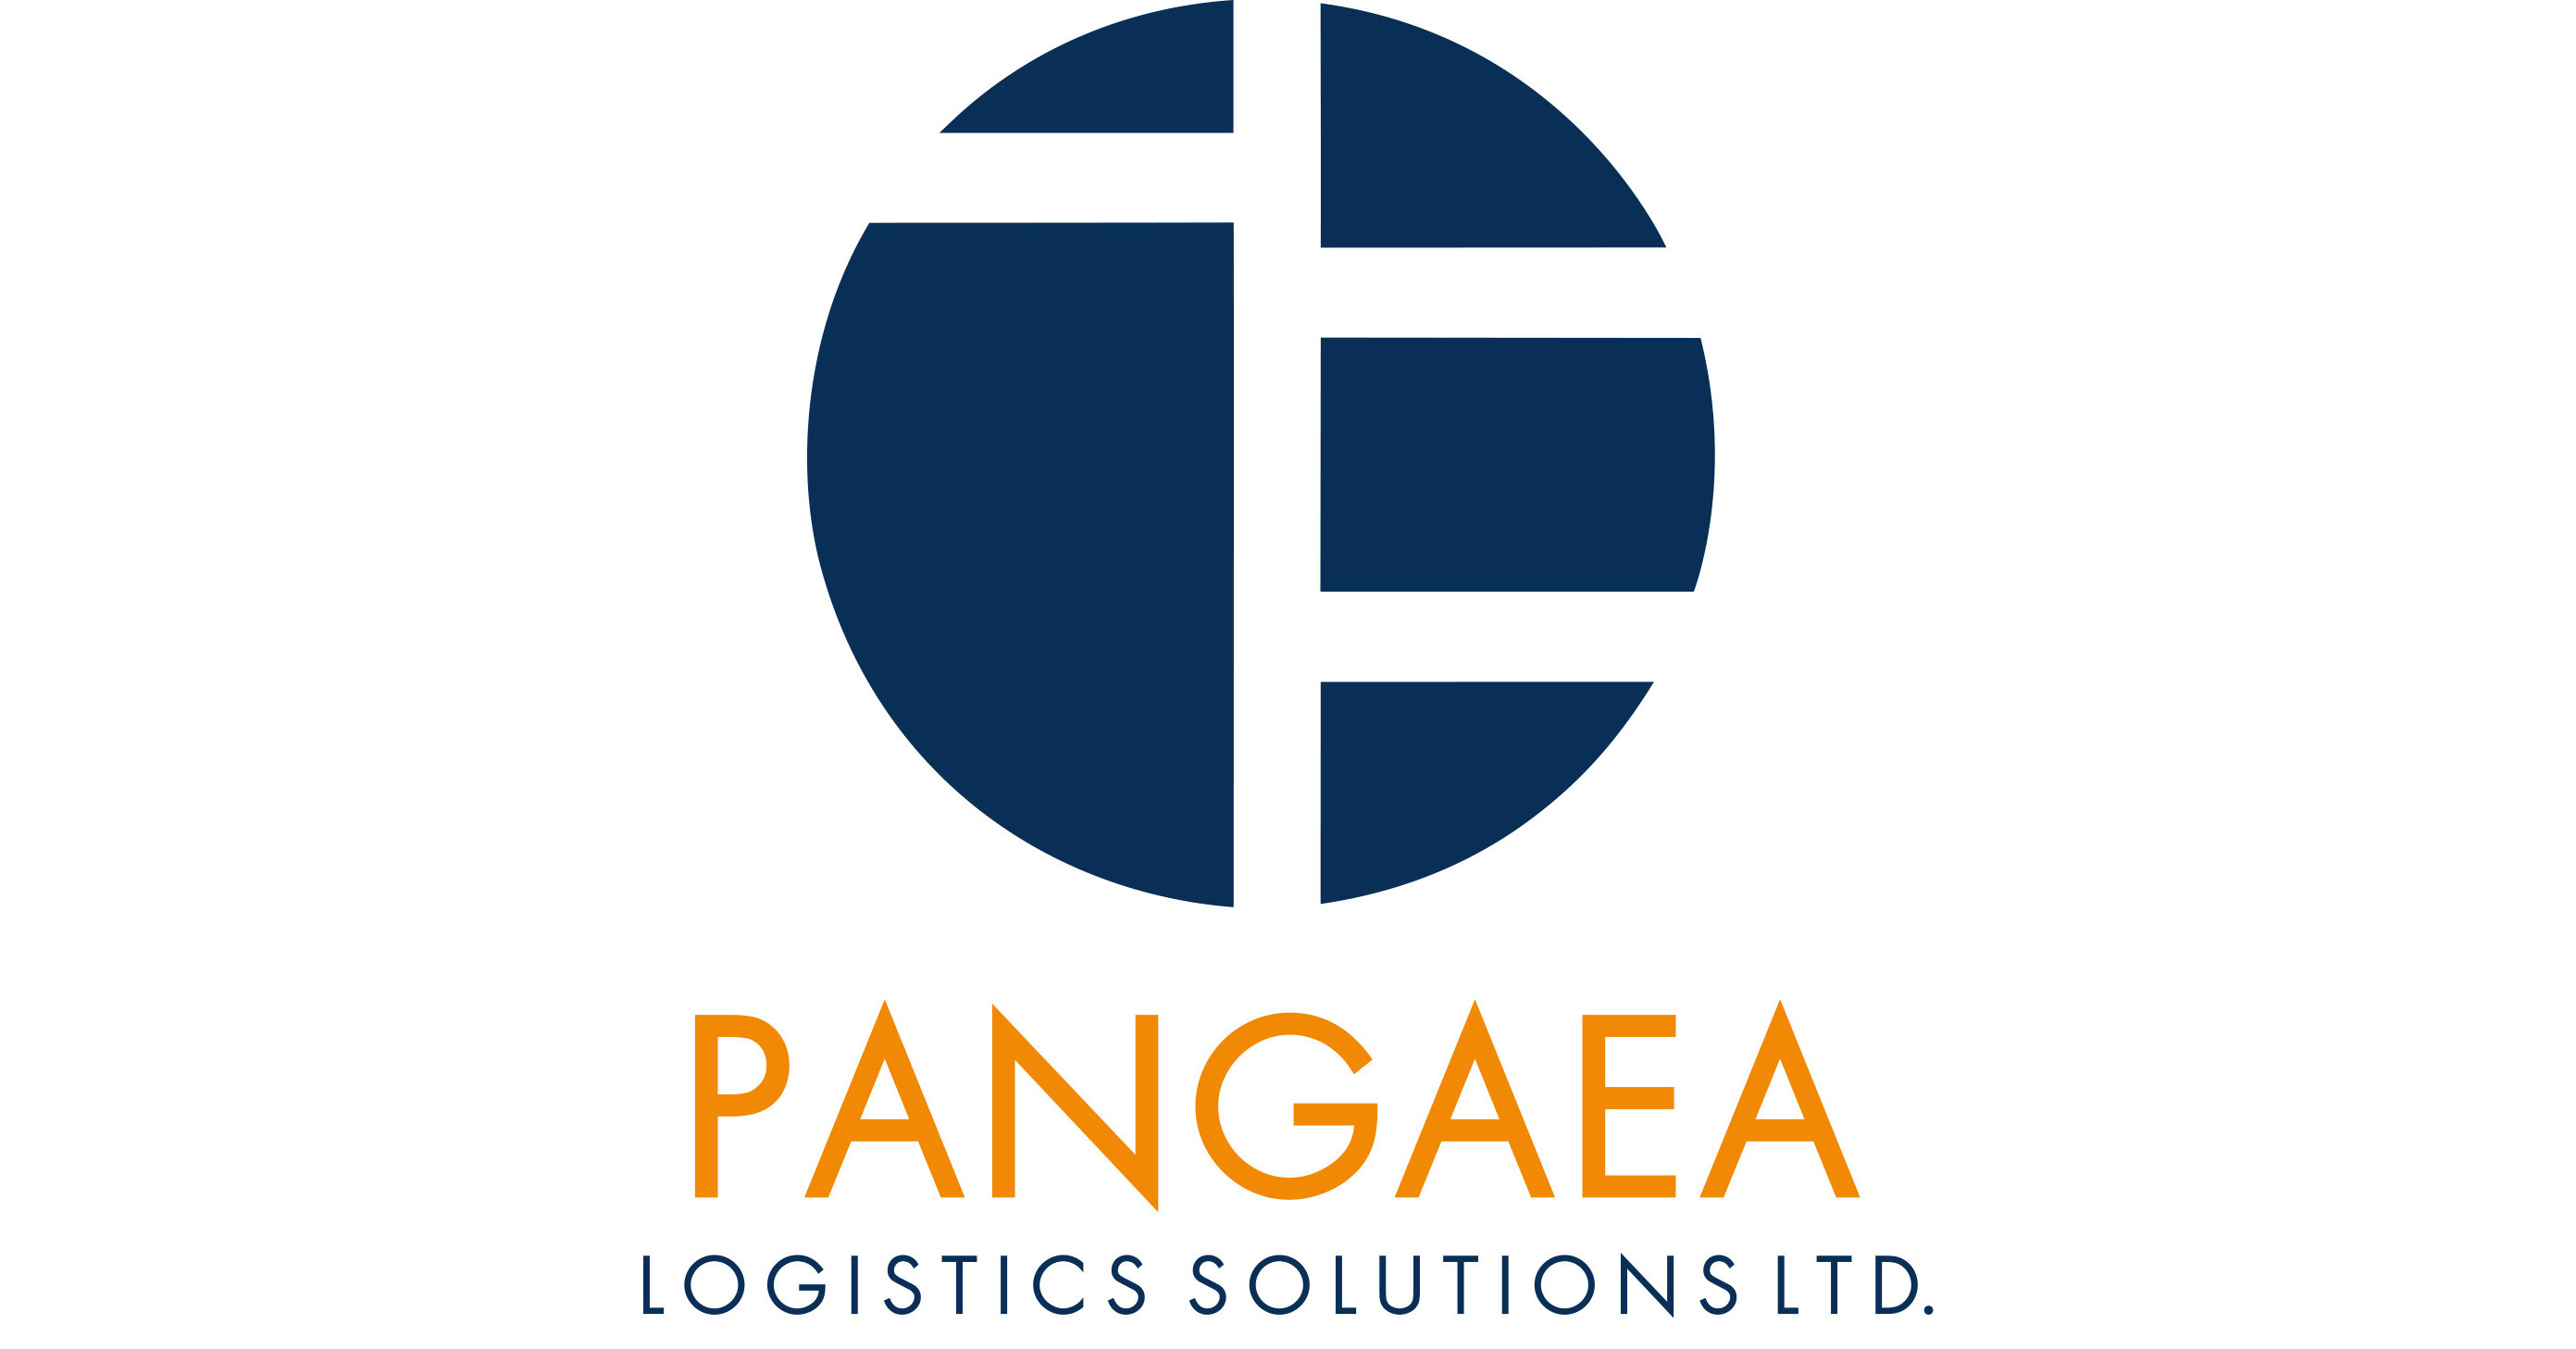 Pangaea Logistics Solutions Ltd. Announces Quarterly Cash Dividend